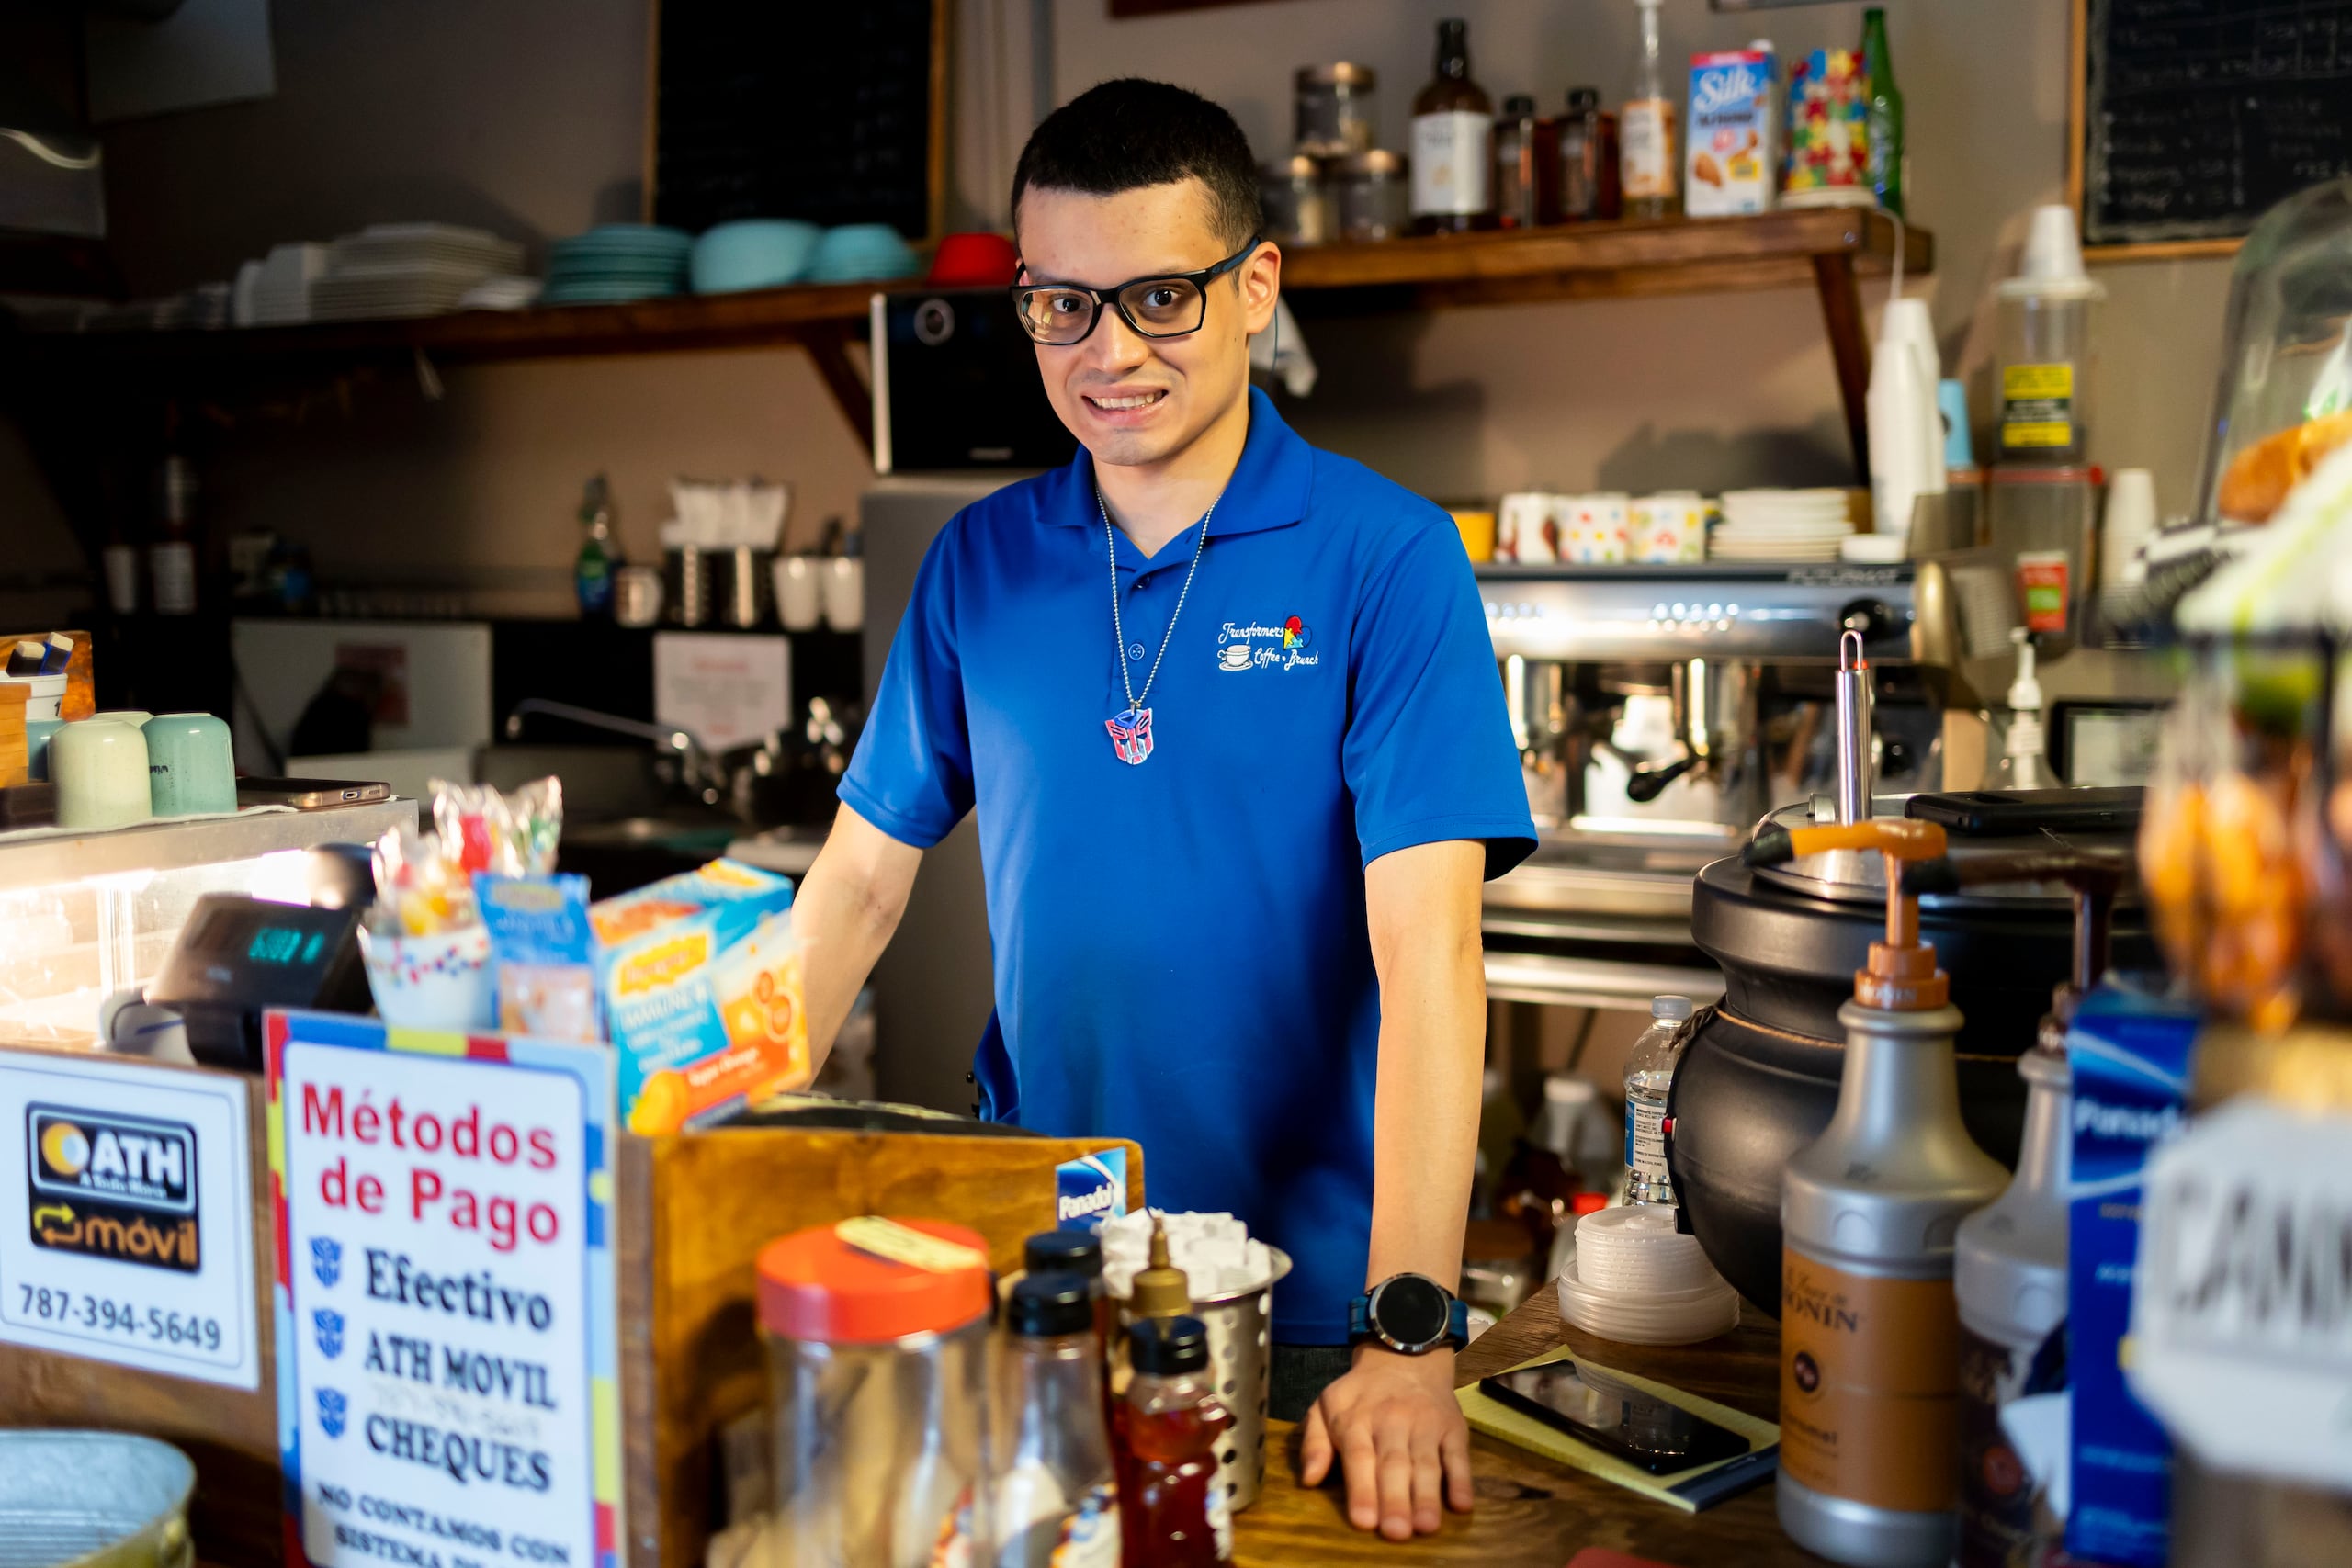 Con la ayuda de su madre, el joven maneja el negocio ubicado en el barrio Padilla, donde él es el barista.